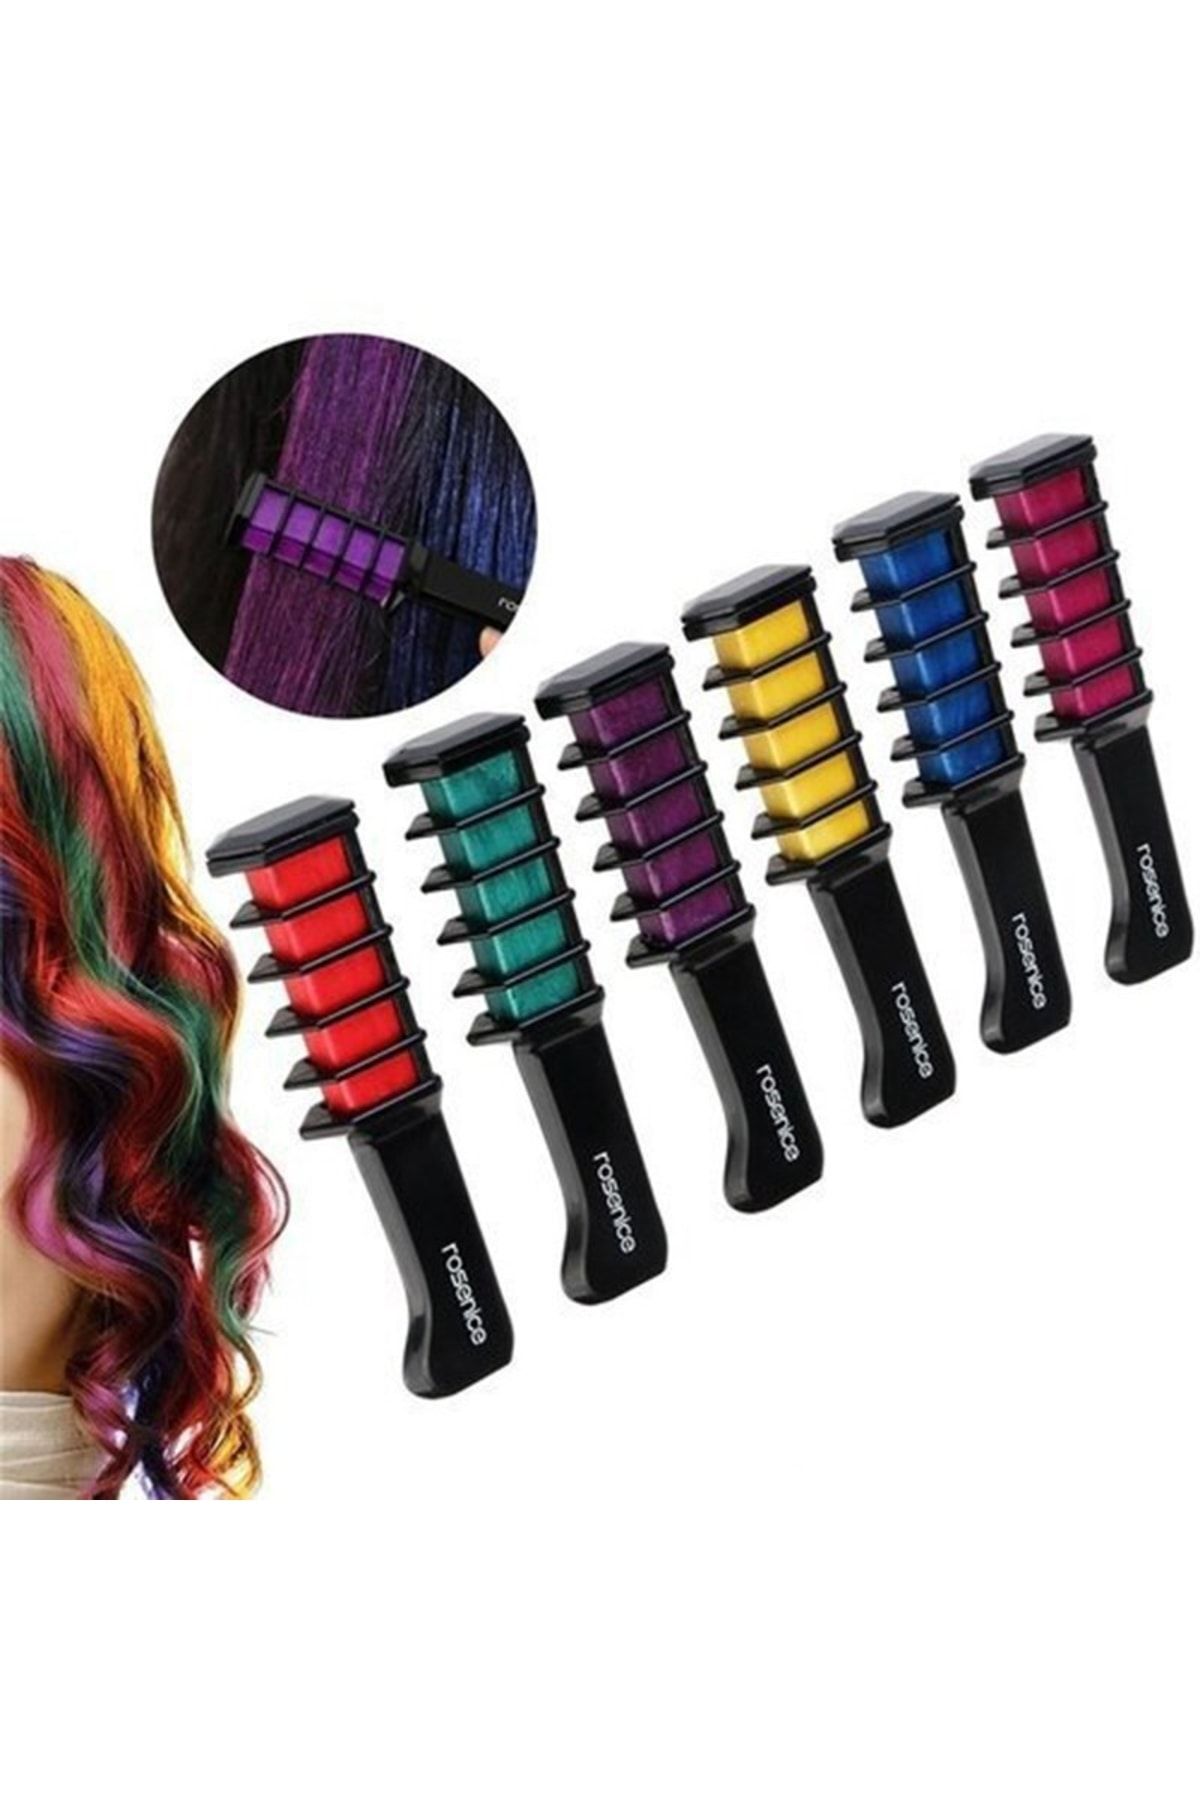 pazariz Rengarenk Saç Boyama Tebeşiri - Mini Taraklı Konsept Saç Boyama Seti Hair Chalk